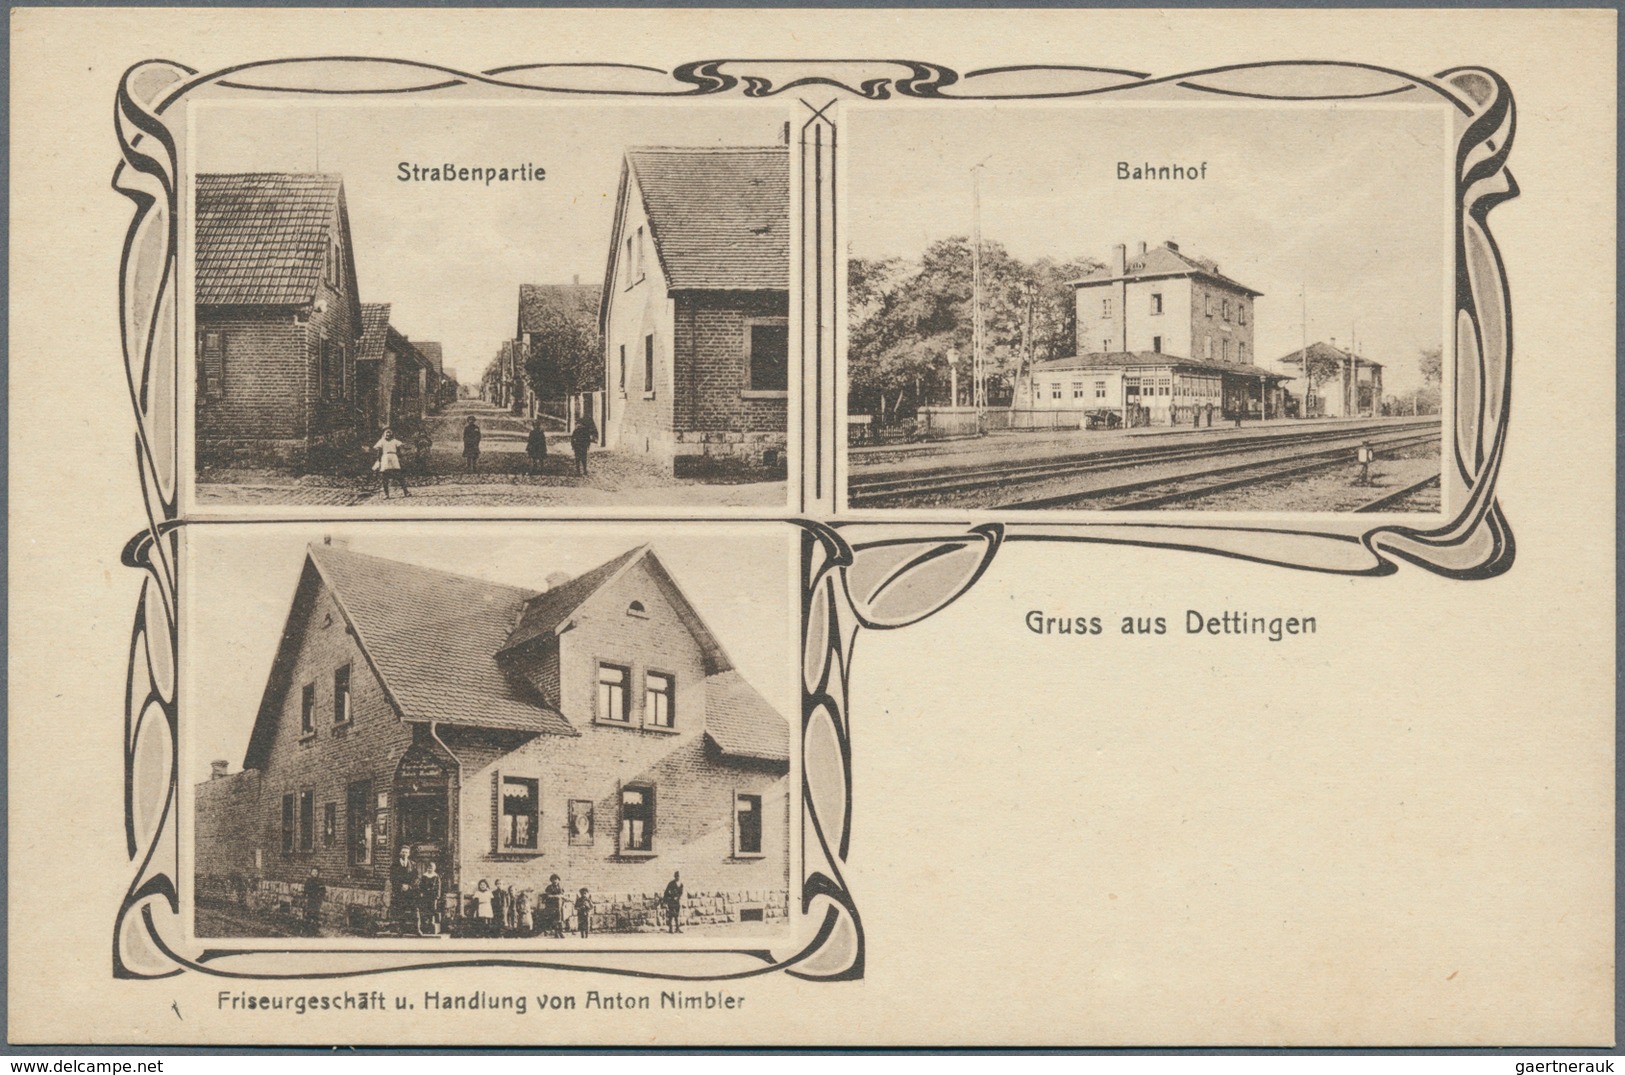 21695 Ansichtskarten: Bayern: BAYERN, ca. 1895/1930, Schachtel mit ca. 225 Karten, neben den üblichen größ